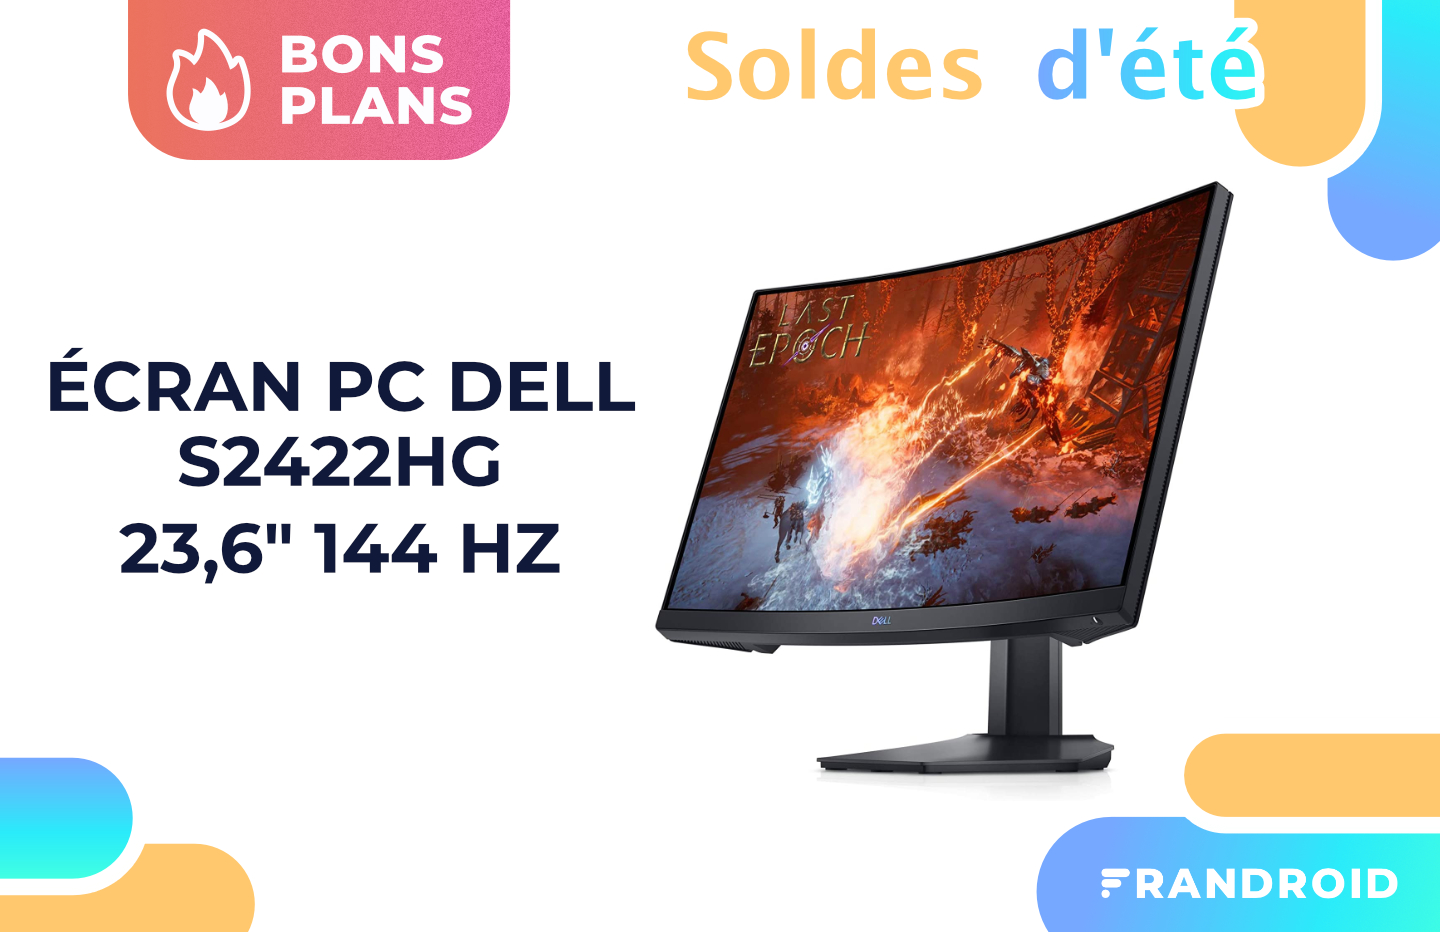 Cet écran gaming Dell de 23,6 (144 Hz) ne coûte pas plus cher que 150  euros pendant les soldes